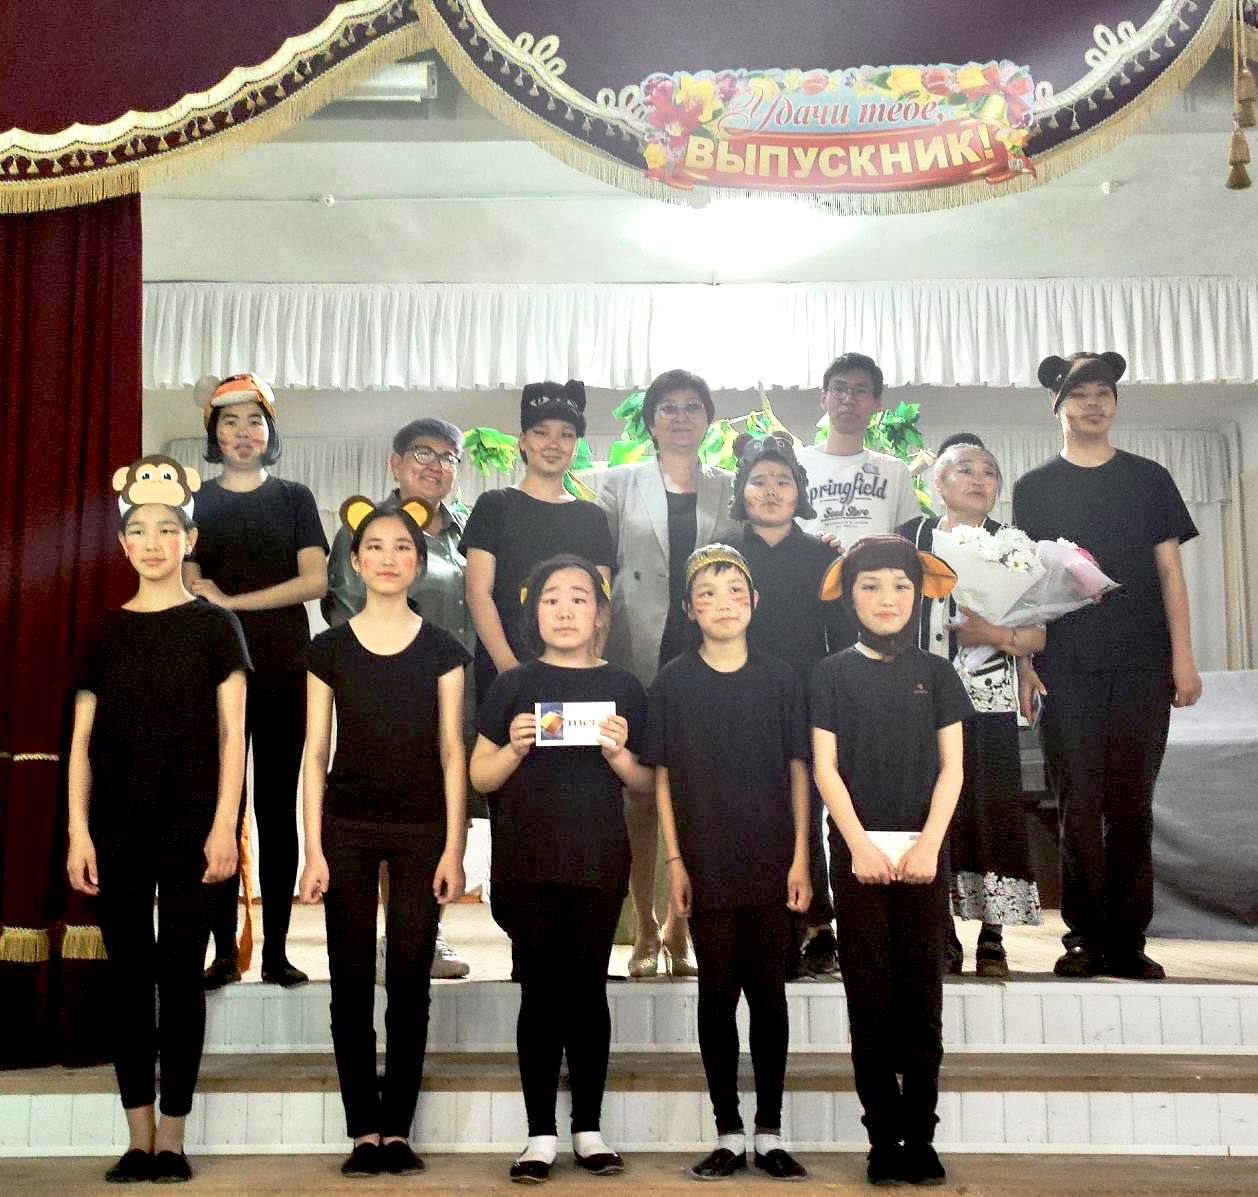 Сегодня учащиеся вокального отделения сдавали контрольный зачёт по актерскому мастерству и сценическому движению. 